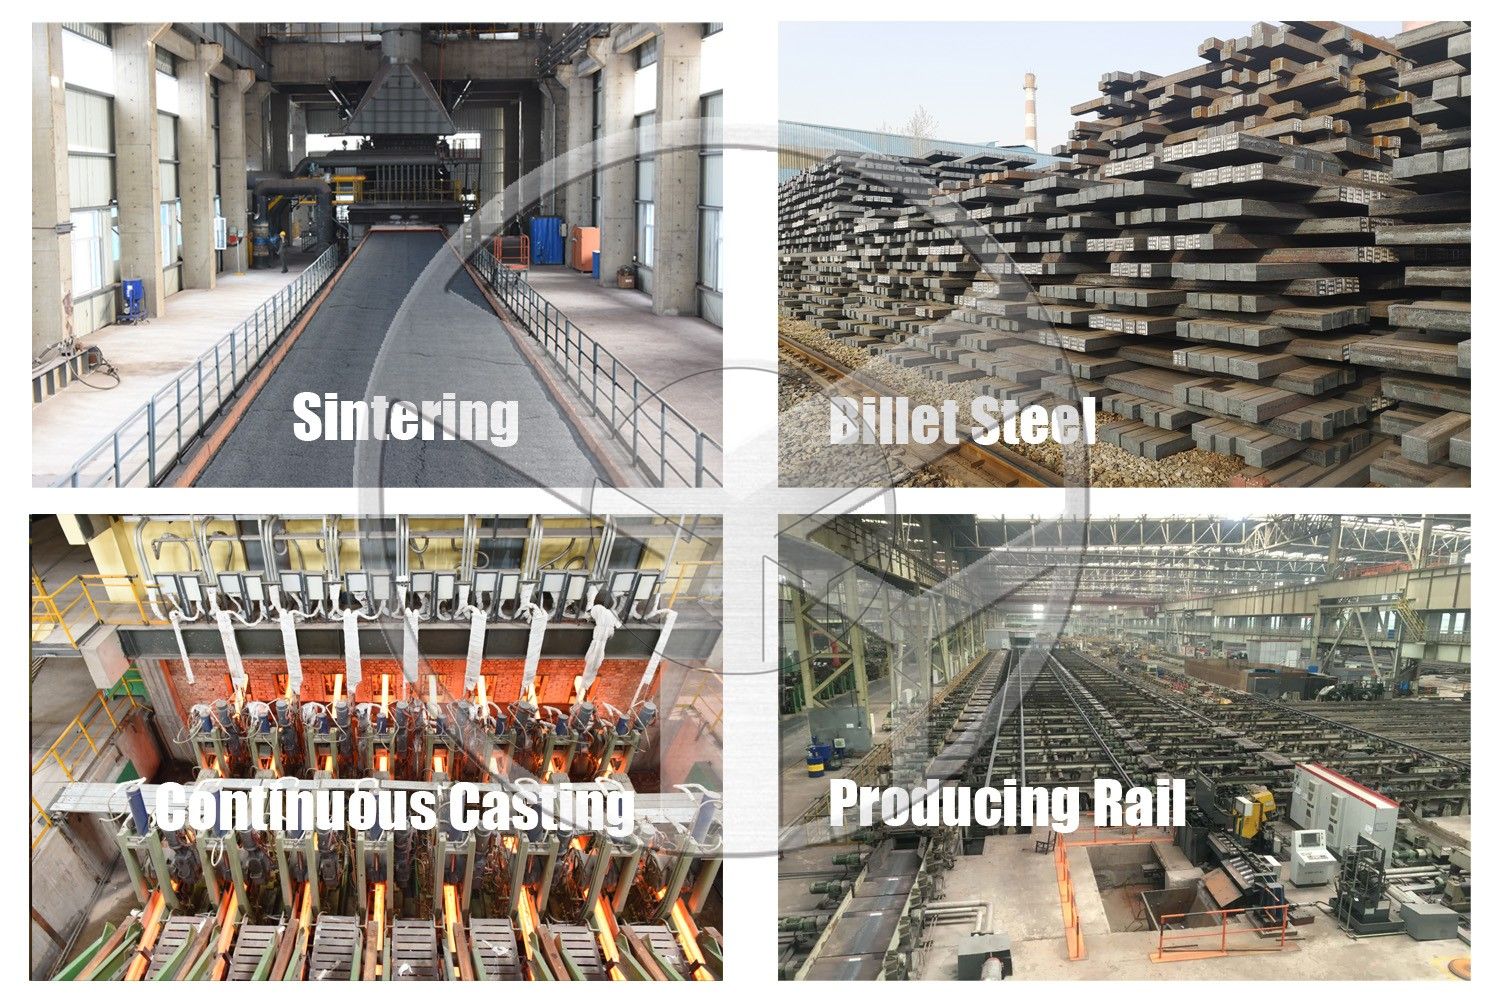 43Kg Heavy Steel Rail